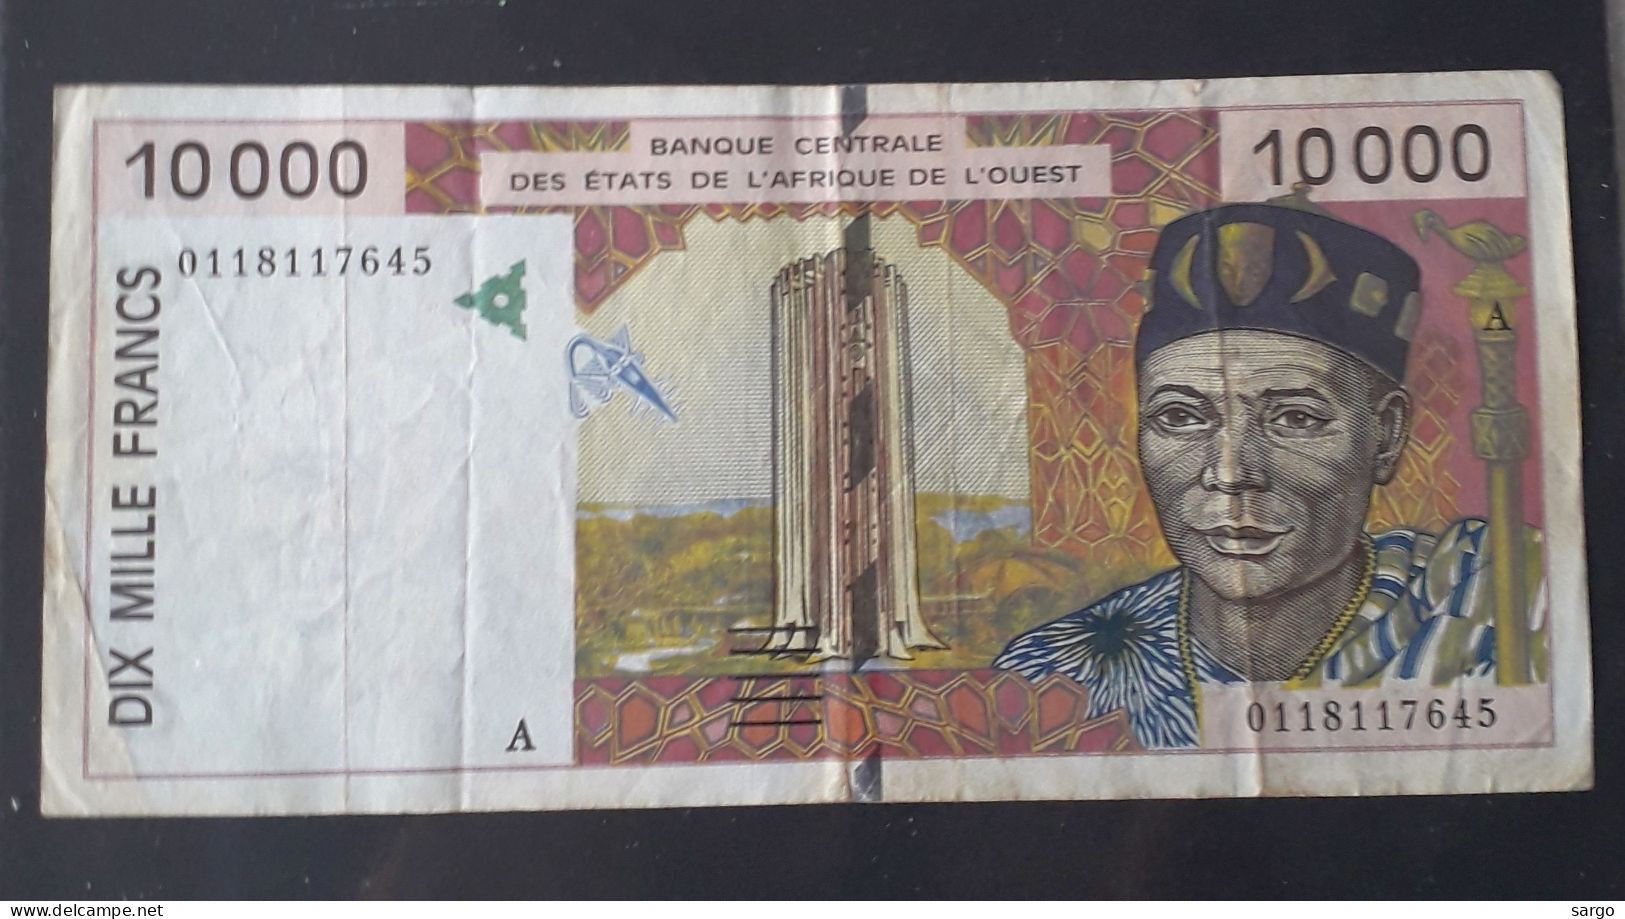 WESTERN AFRICAN STATE - IVORY COAST - 10.000 FRANCS - (1992 - 2001) - CIRC - P 114A - BANKNOTES - PAPER MONEY - États D'Afrique De L'Ouest